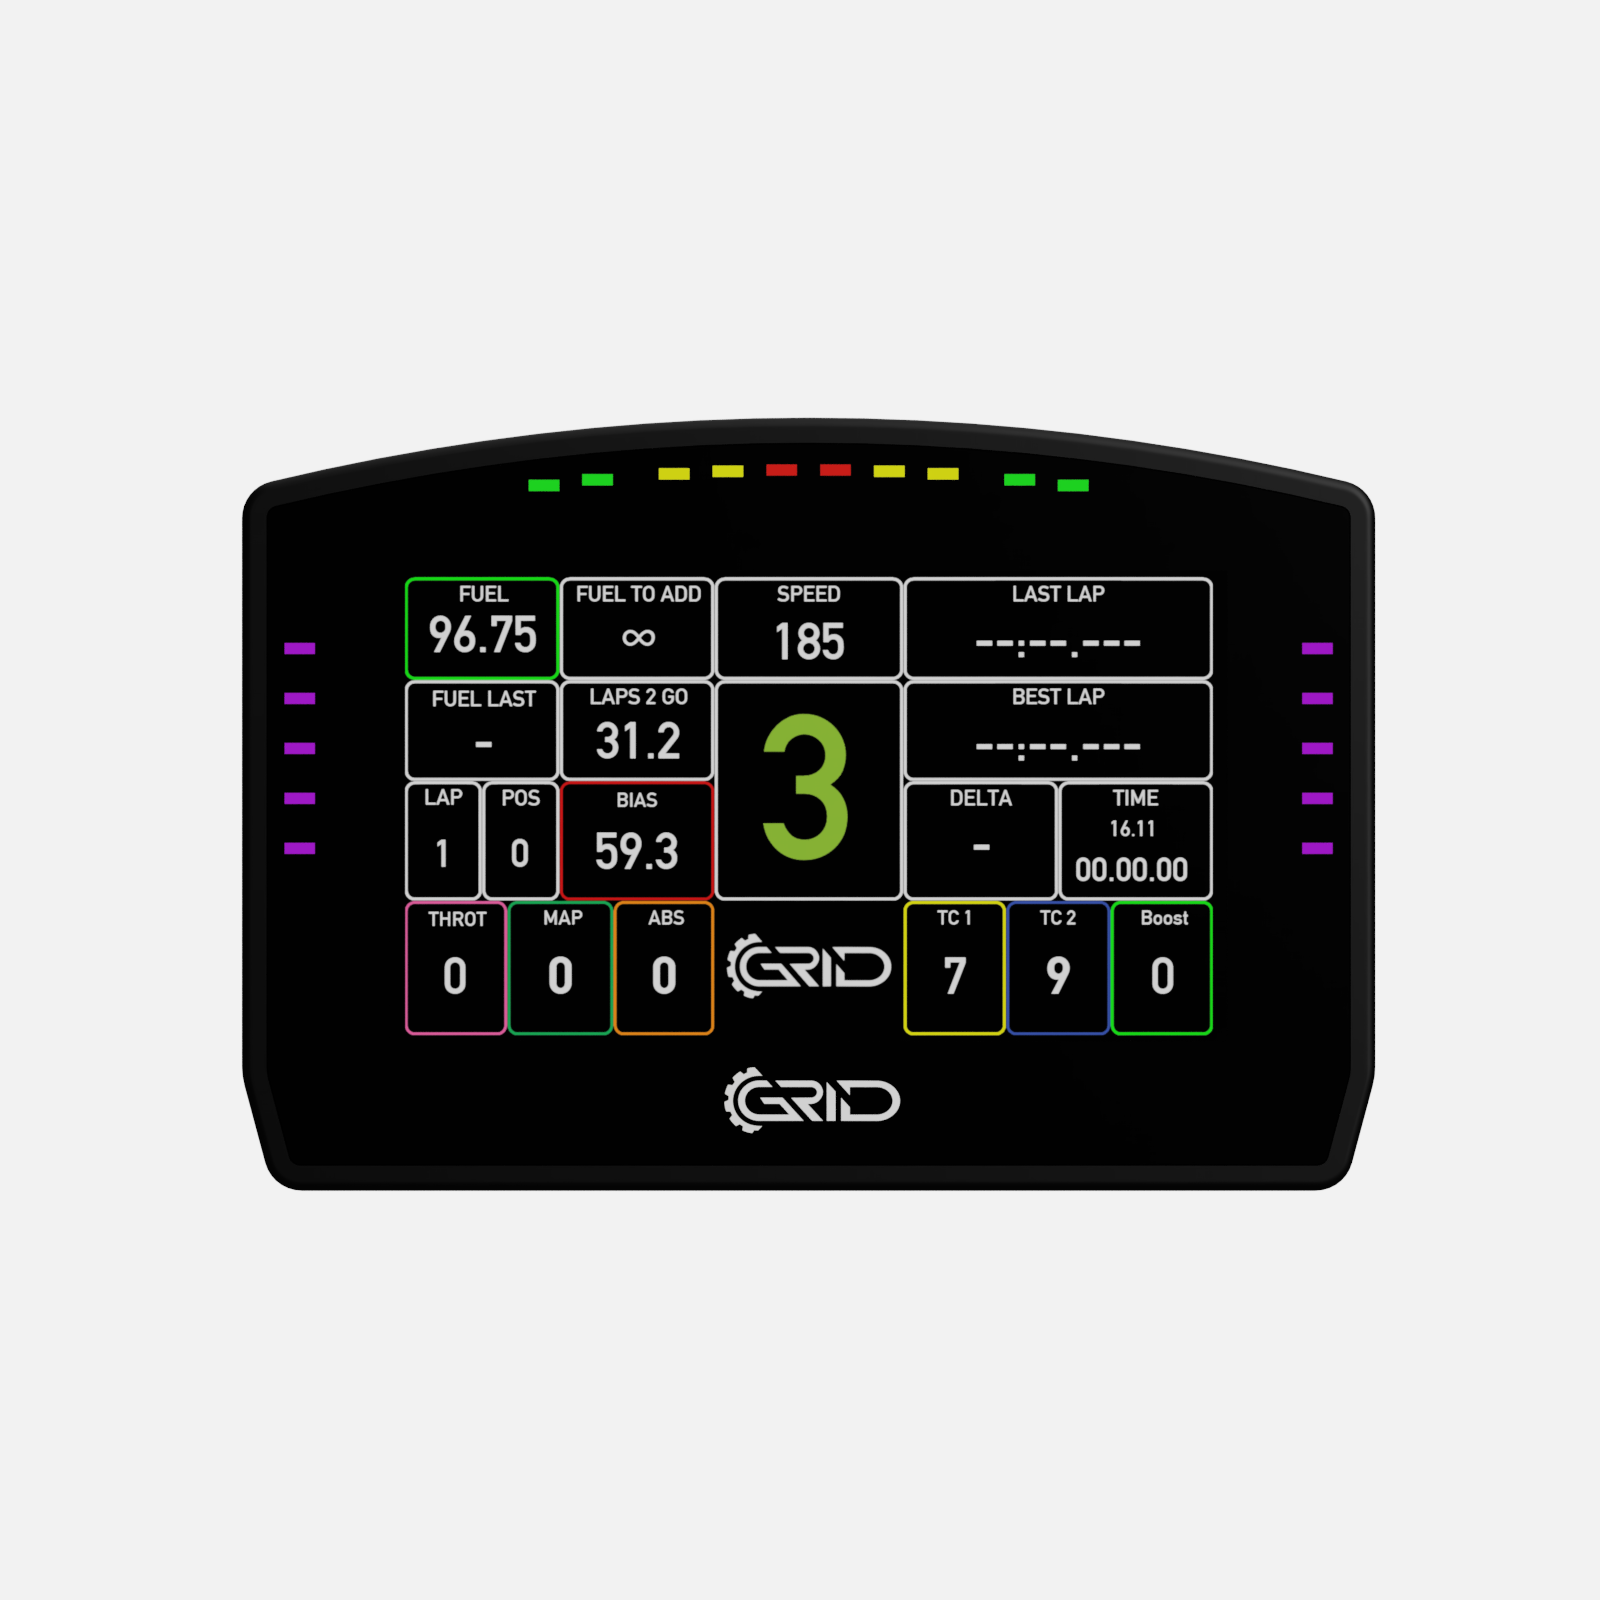 GRID DDU5 Dashboard Display Unit